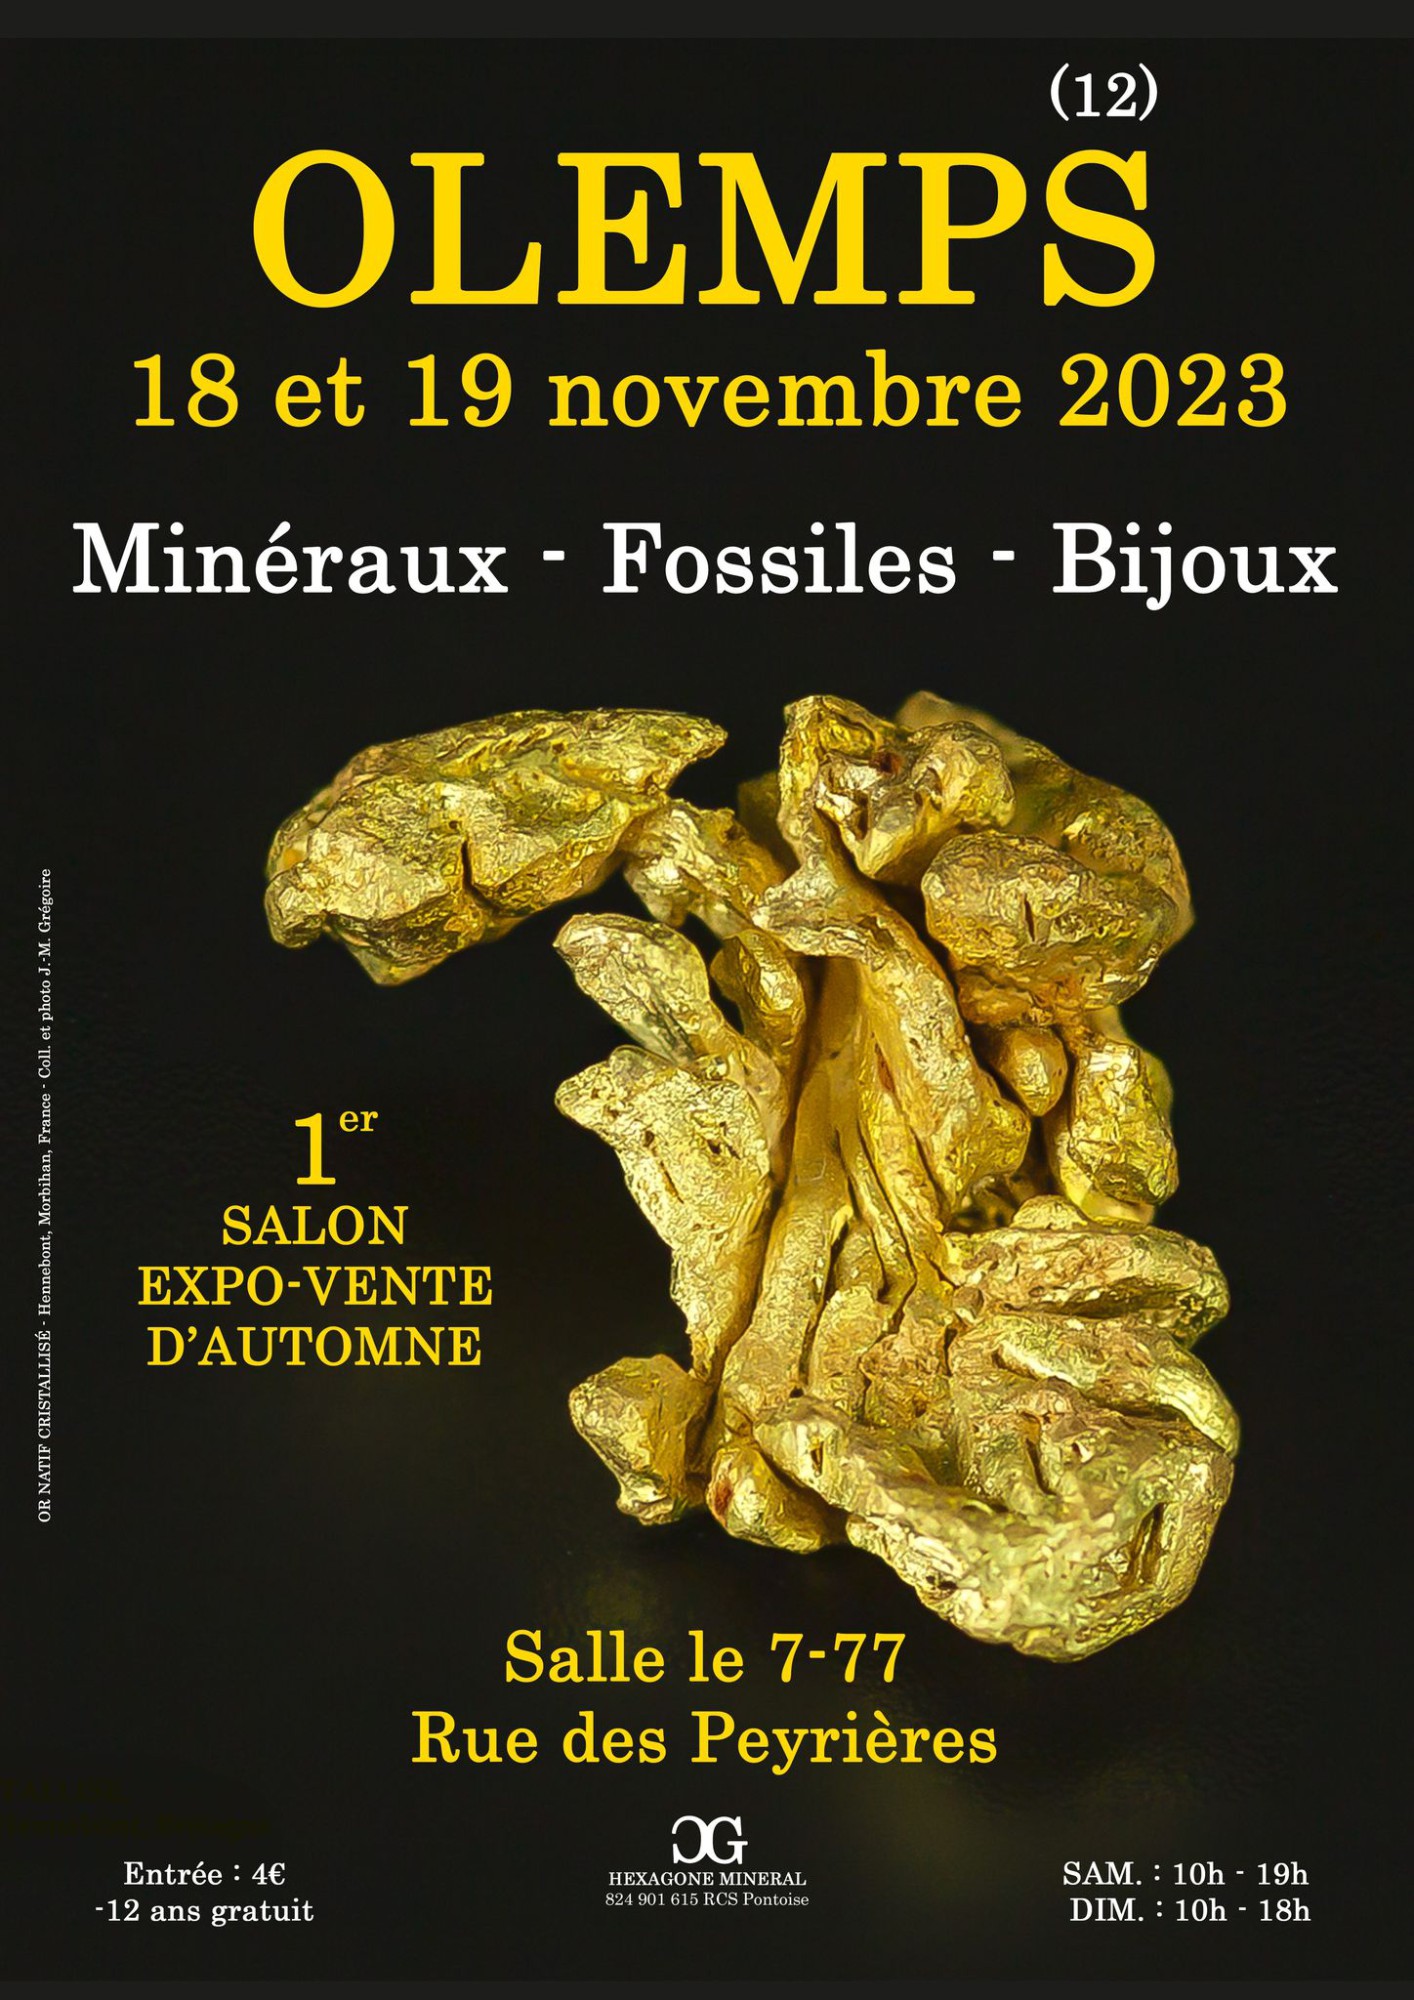 Rodez - 1er SALON MINERAUX FOSSILES BIJOUX d'automne de OLEMPS (Aveyron)